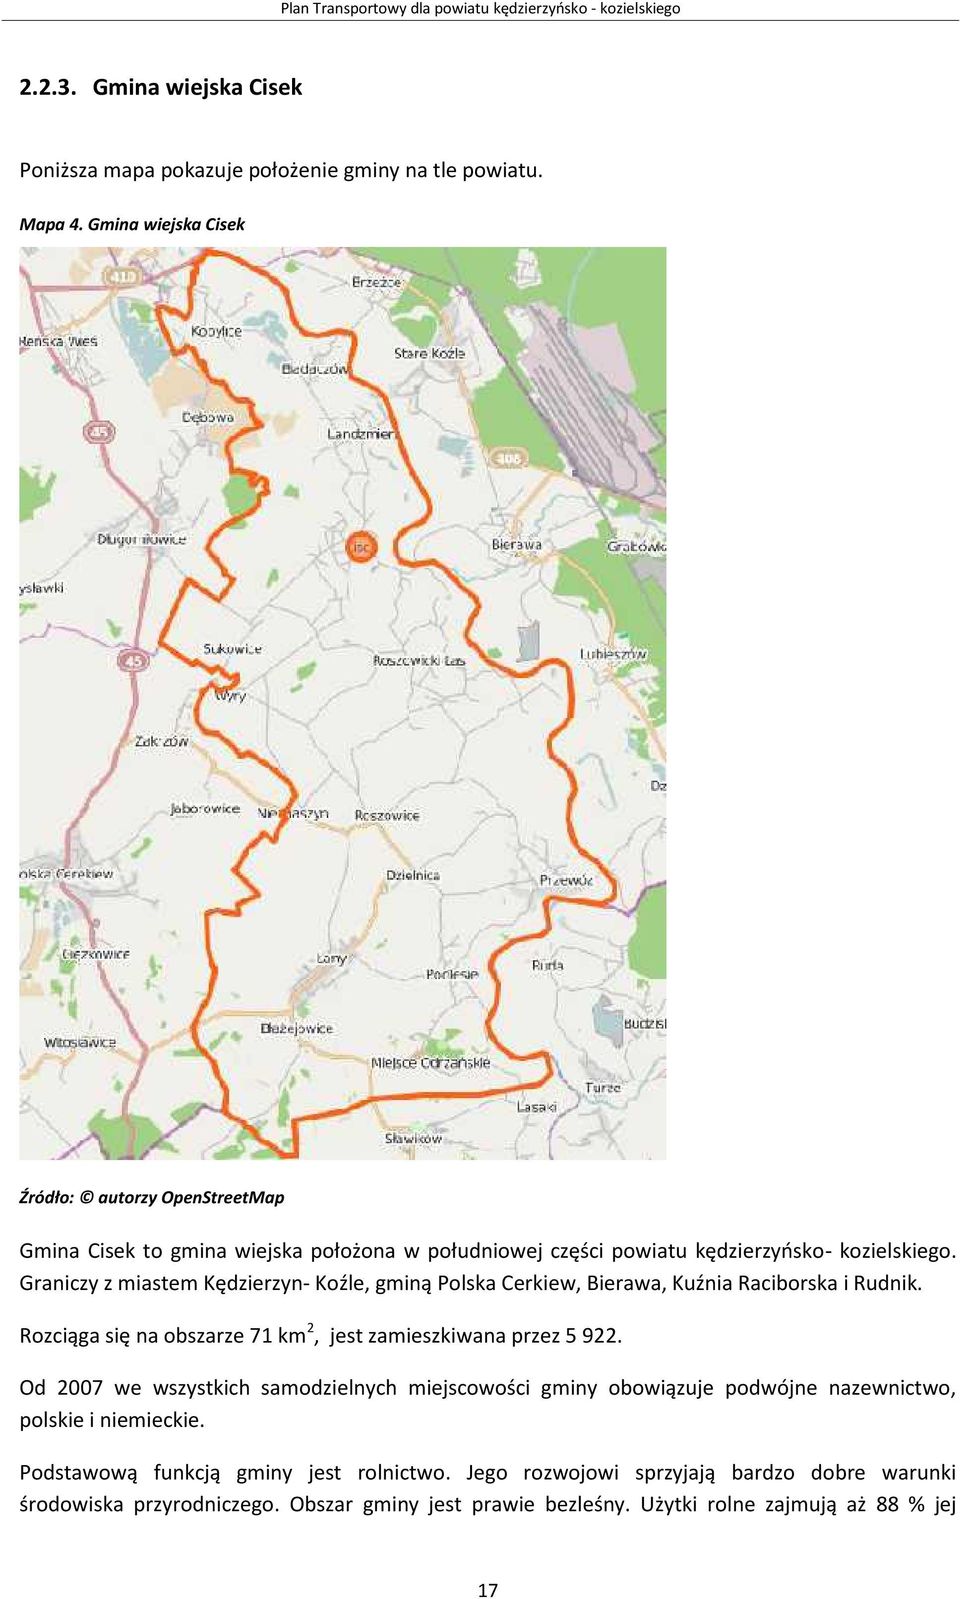 Graniczy z miastem Kędzierzyn- Koźle, gminą Polska Cerkiew, Bierawa, Kuźnia Raciborska i Rudnik. Rozciąga się na obszarze 71 km2, jest zamieszkiwana przez 5 922.